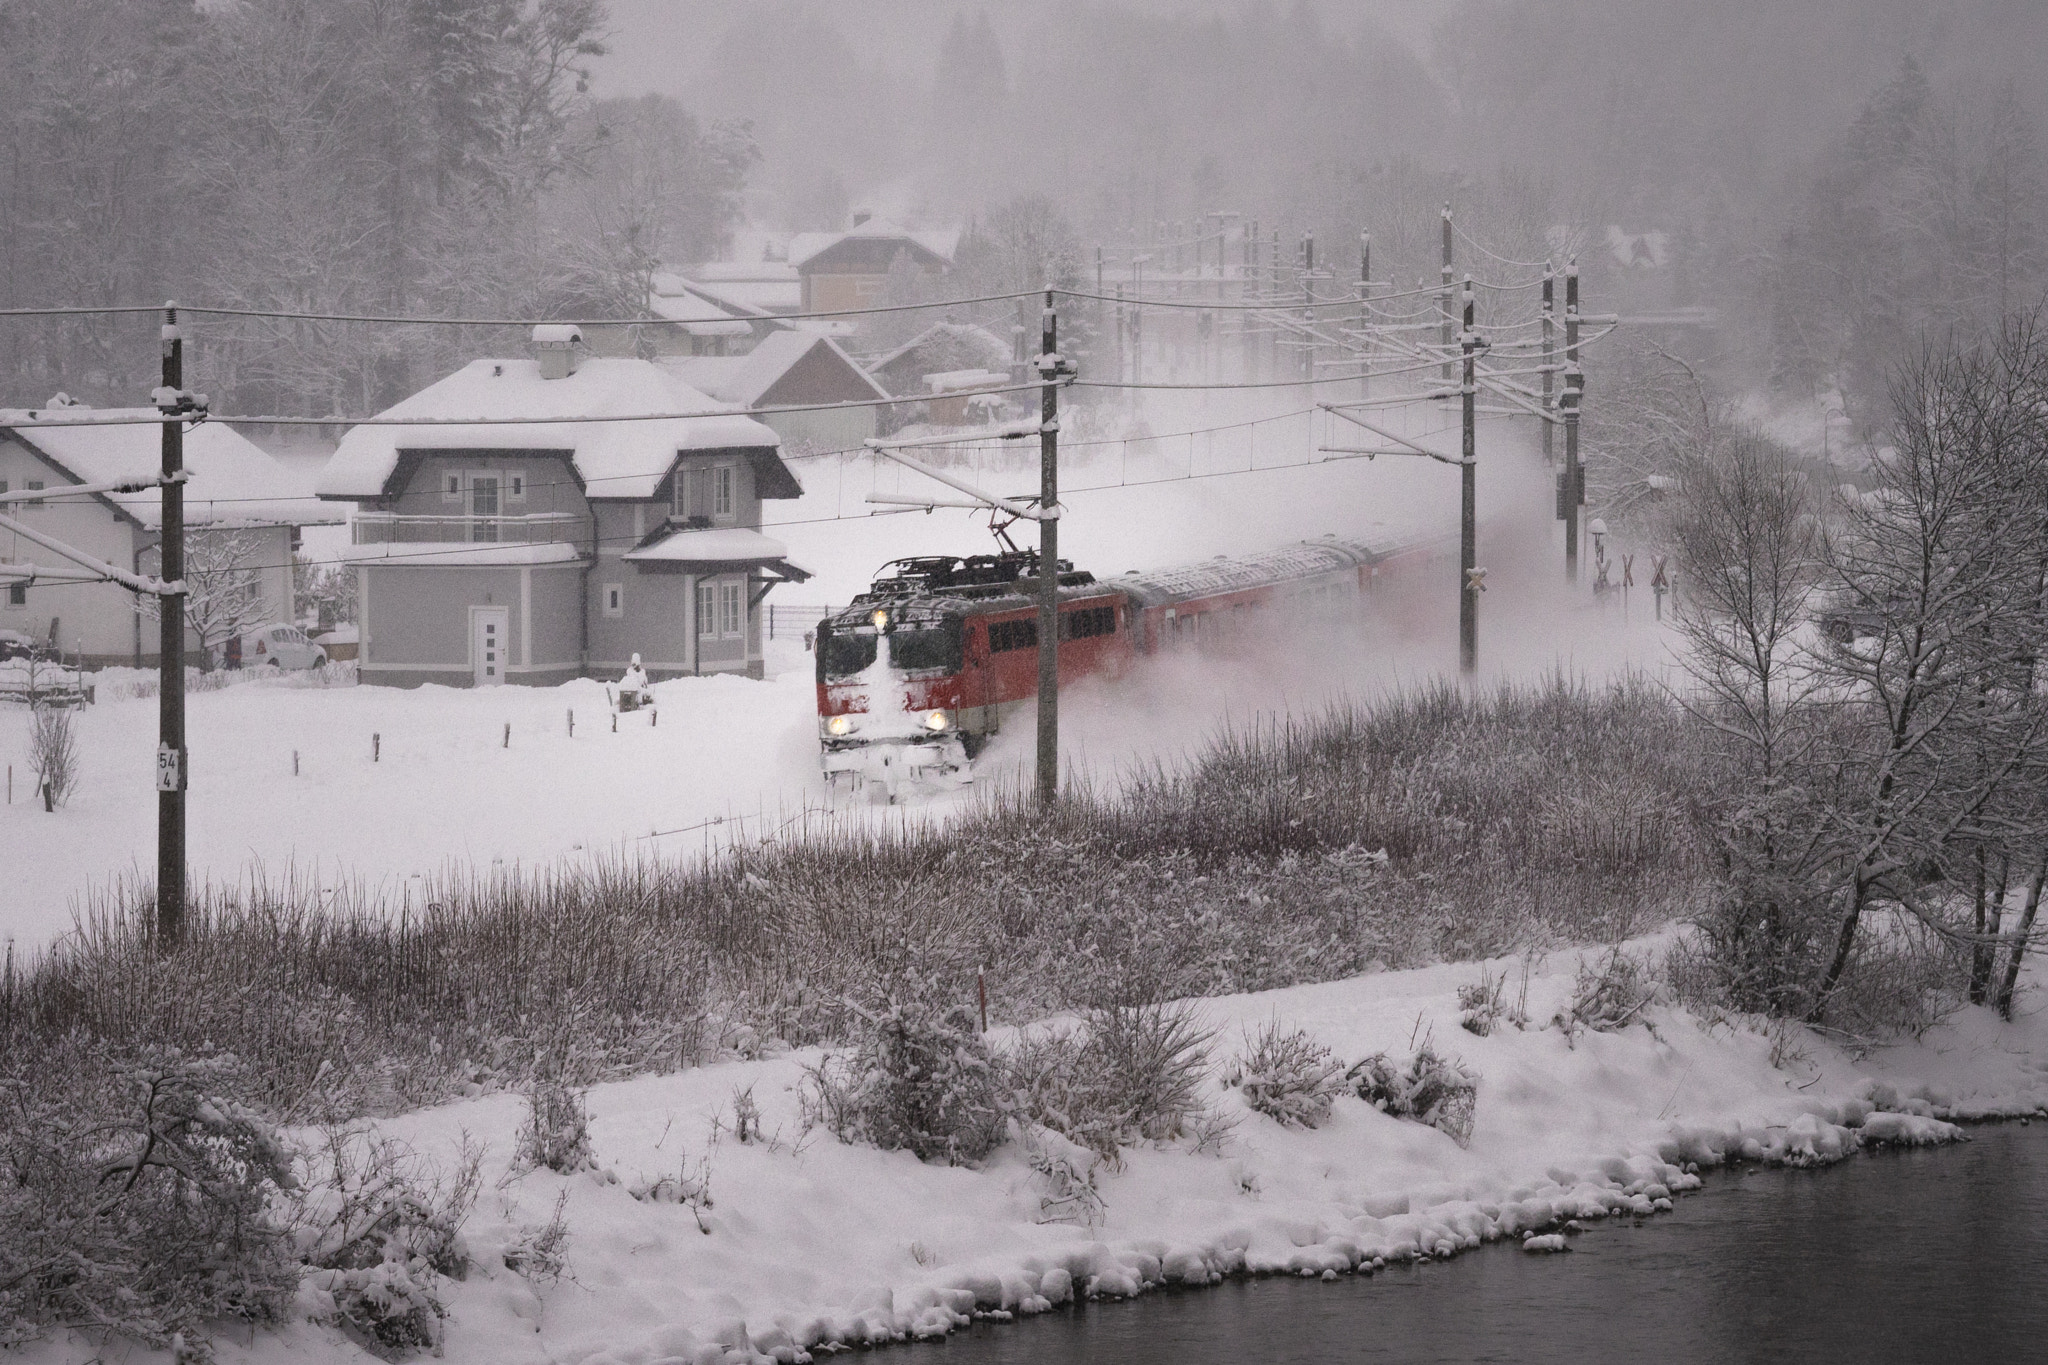 Sony a7R sample photo. Snow train photography